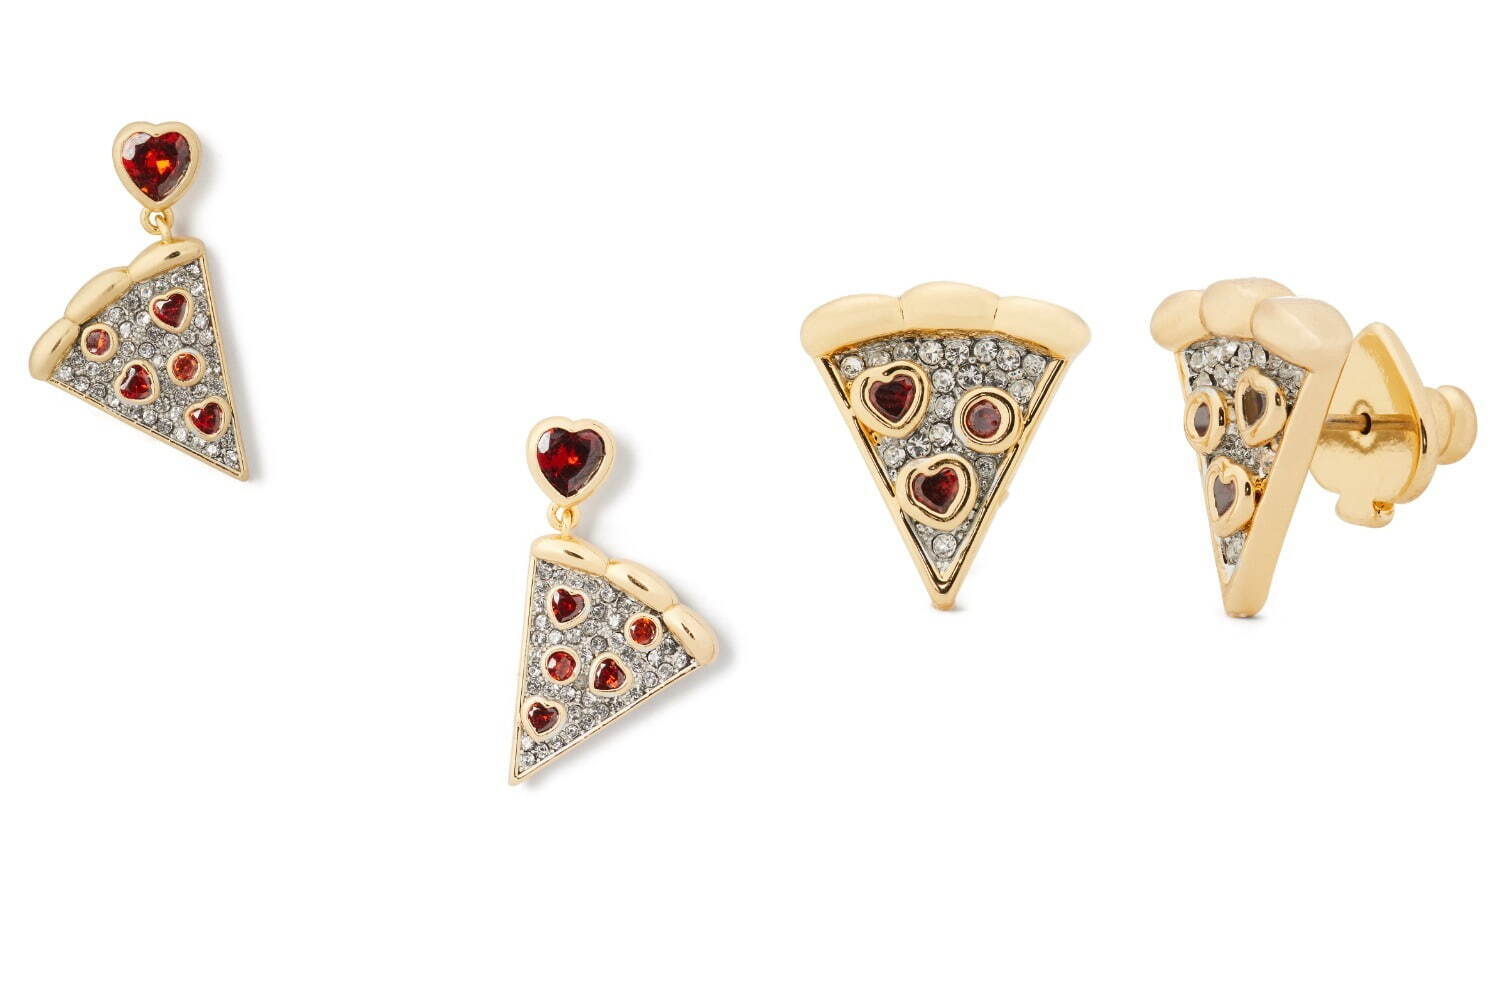 左から)pizza drop earrings  13,200円、pizza studs  11,000円
※2021年12月上旬発売予定。